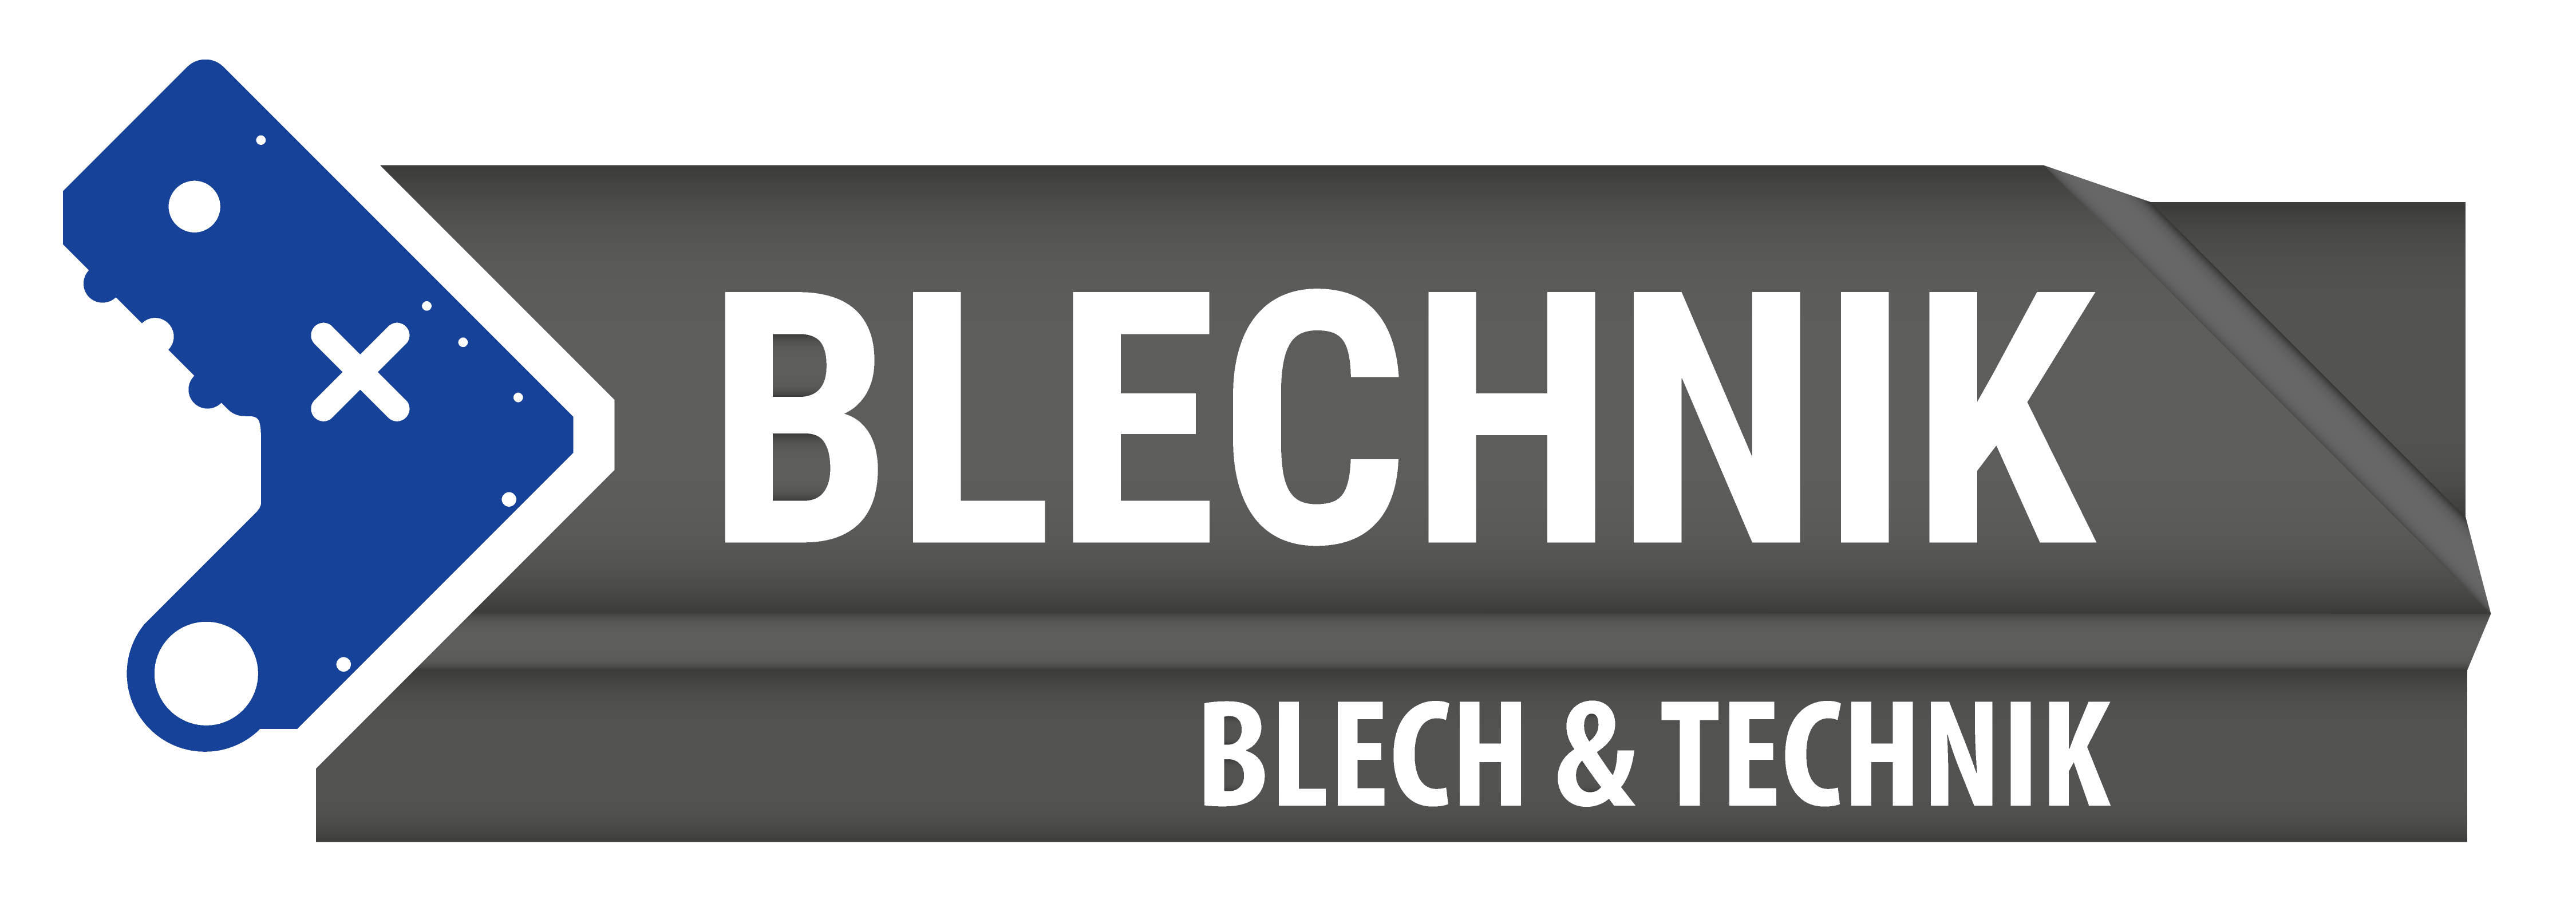 Blechnik-Shop